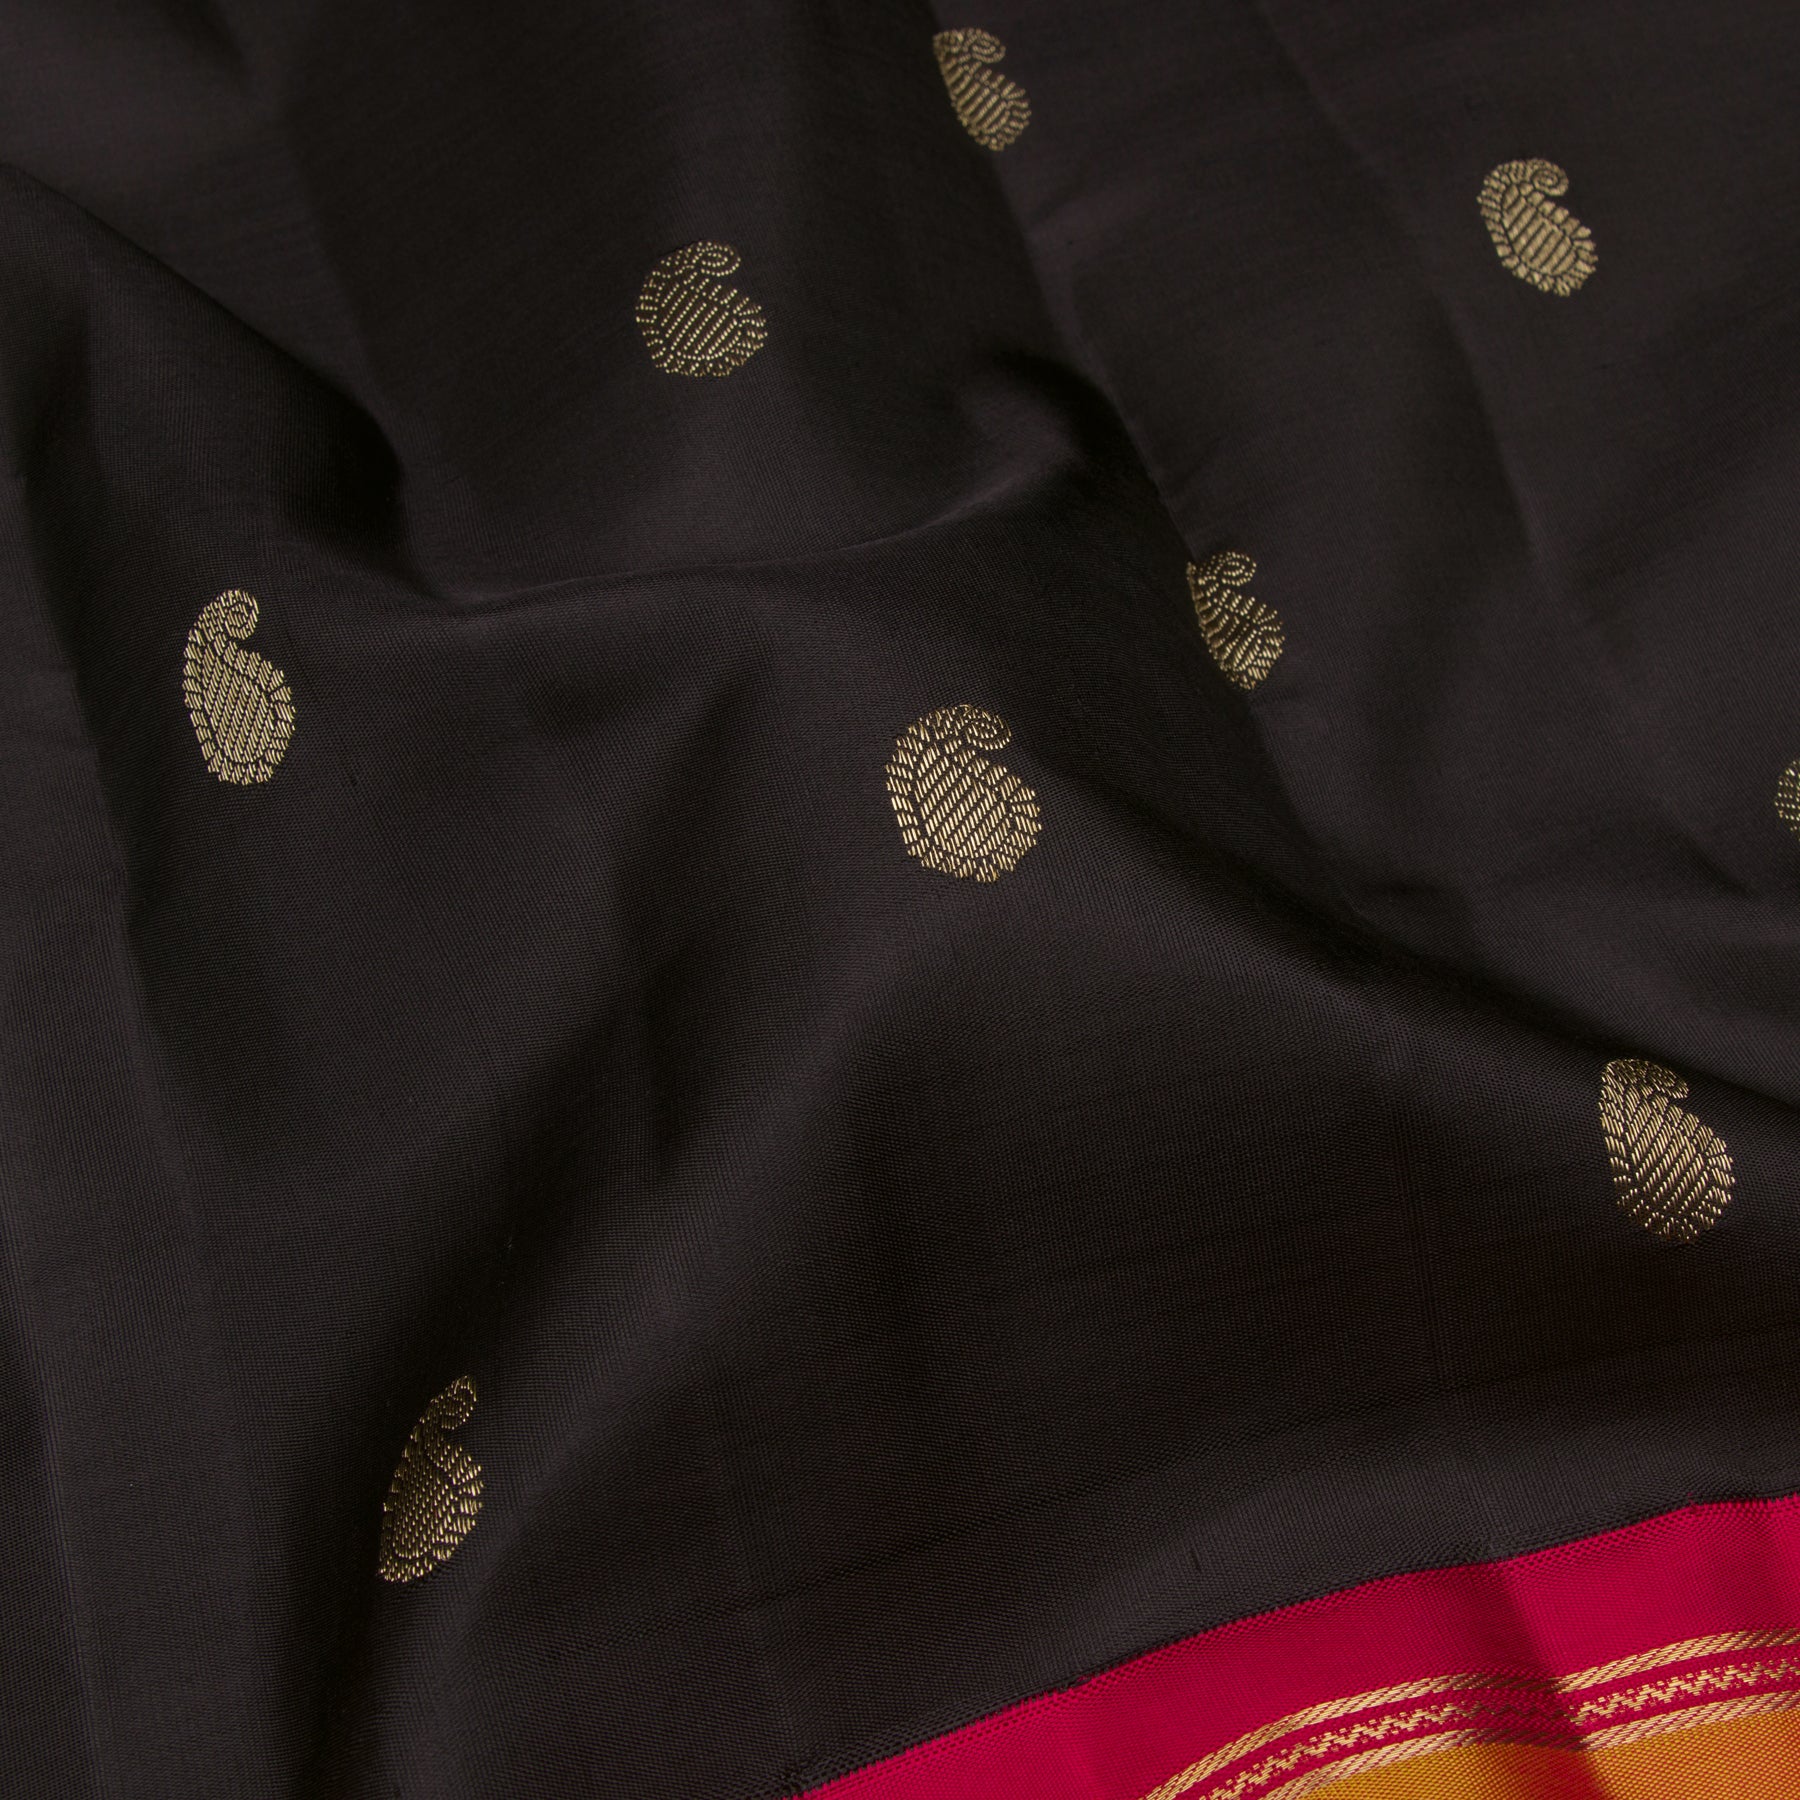 Kanakavalli Kanjivaram Silk Sari 23-595-HS001-09596 - Fabric View